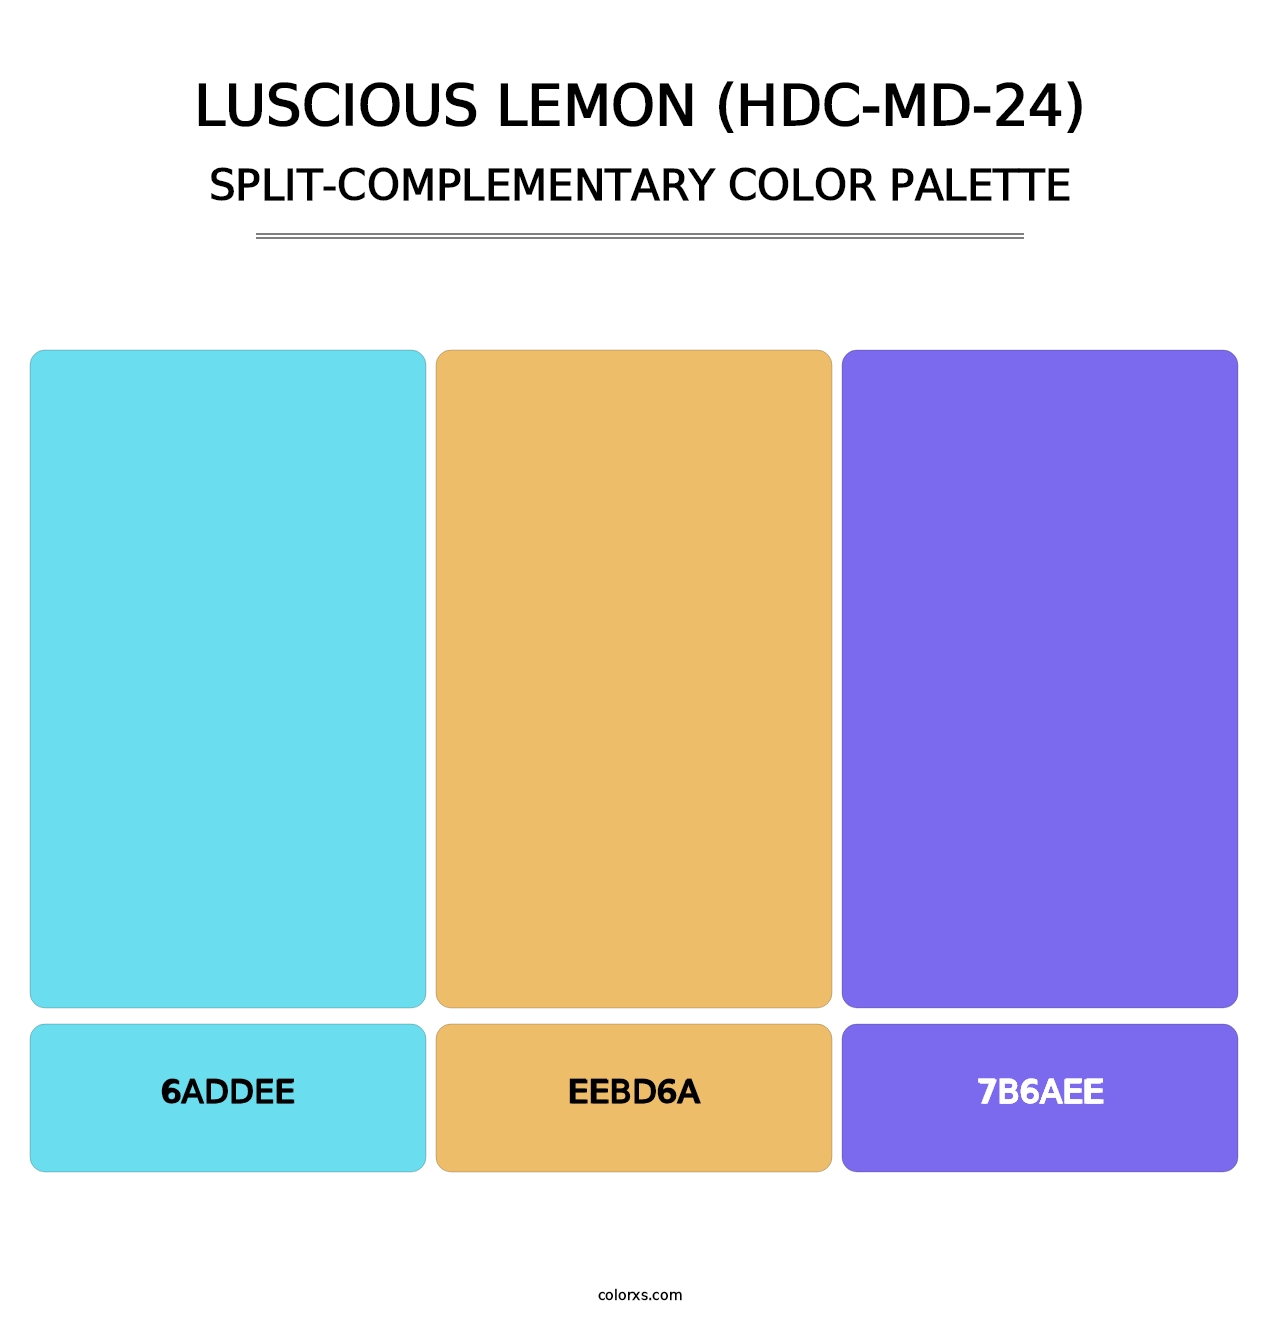 Luscious Lemon (HDC-MD-24) - Split-Complementary Color Palette